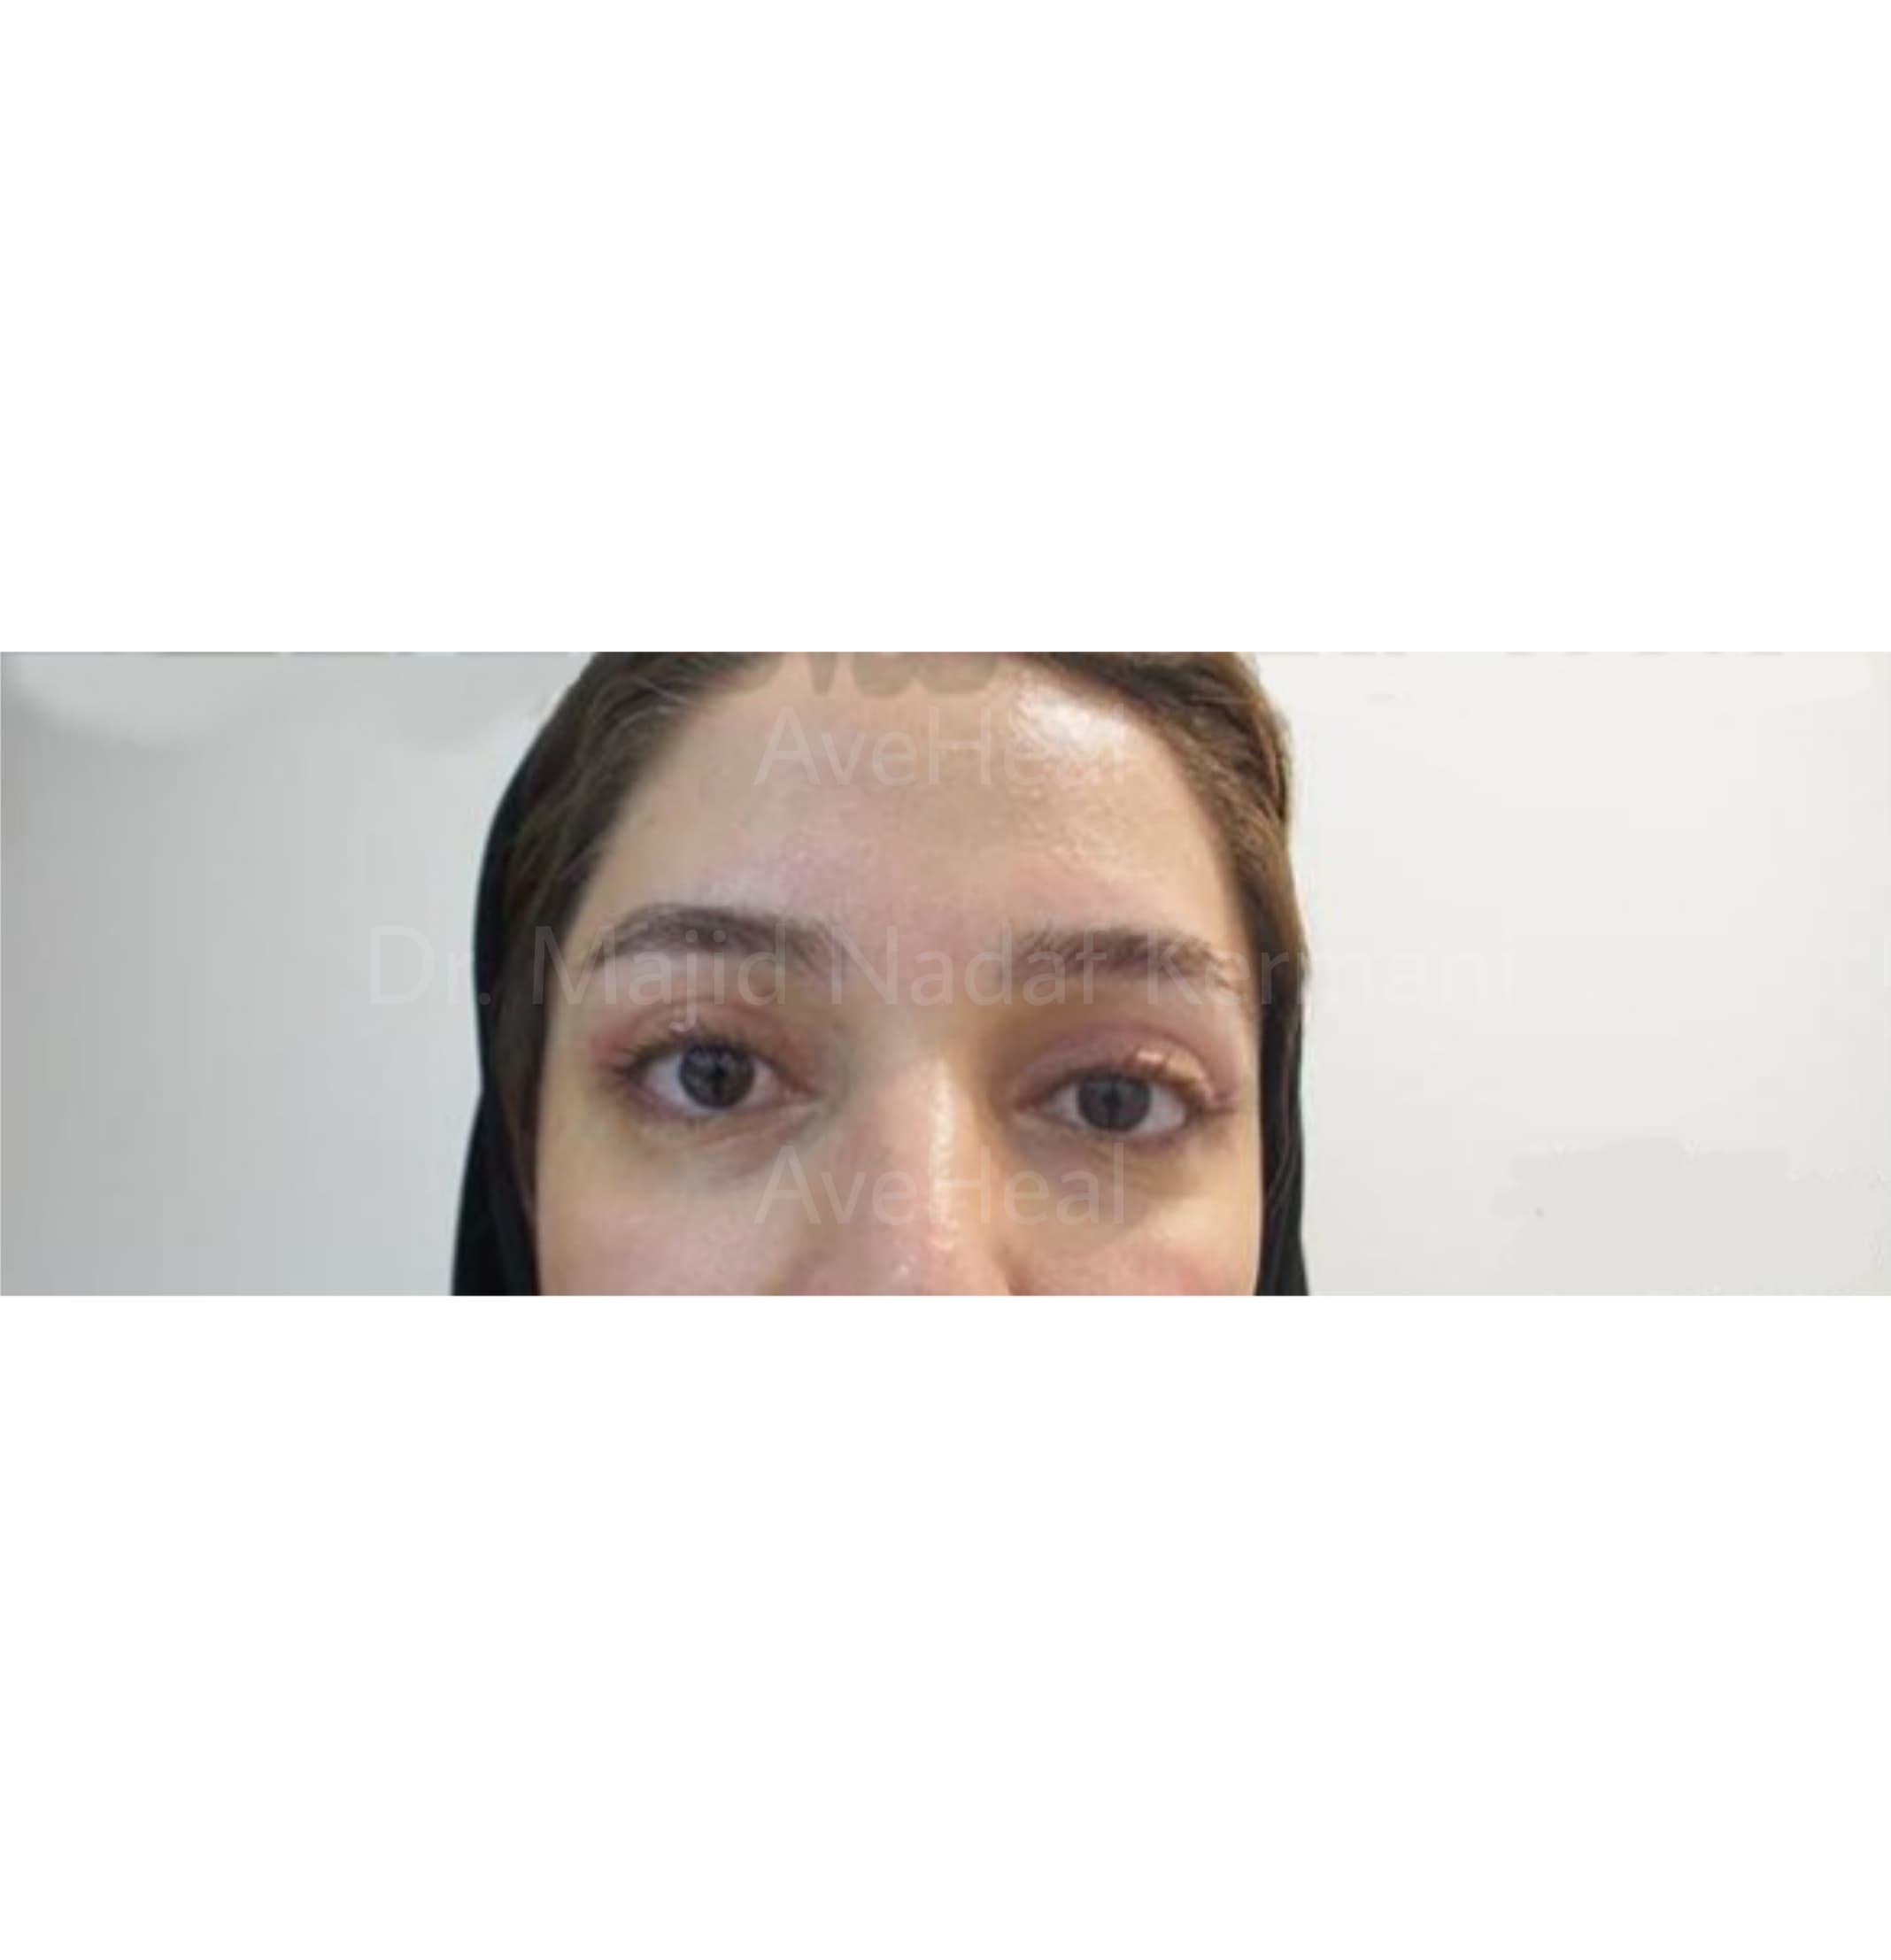 after-blepharoplasty-dr-majid-nadaf-kermani